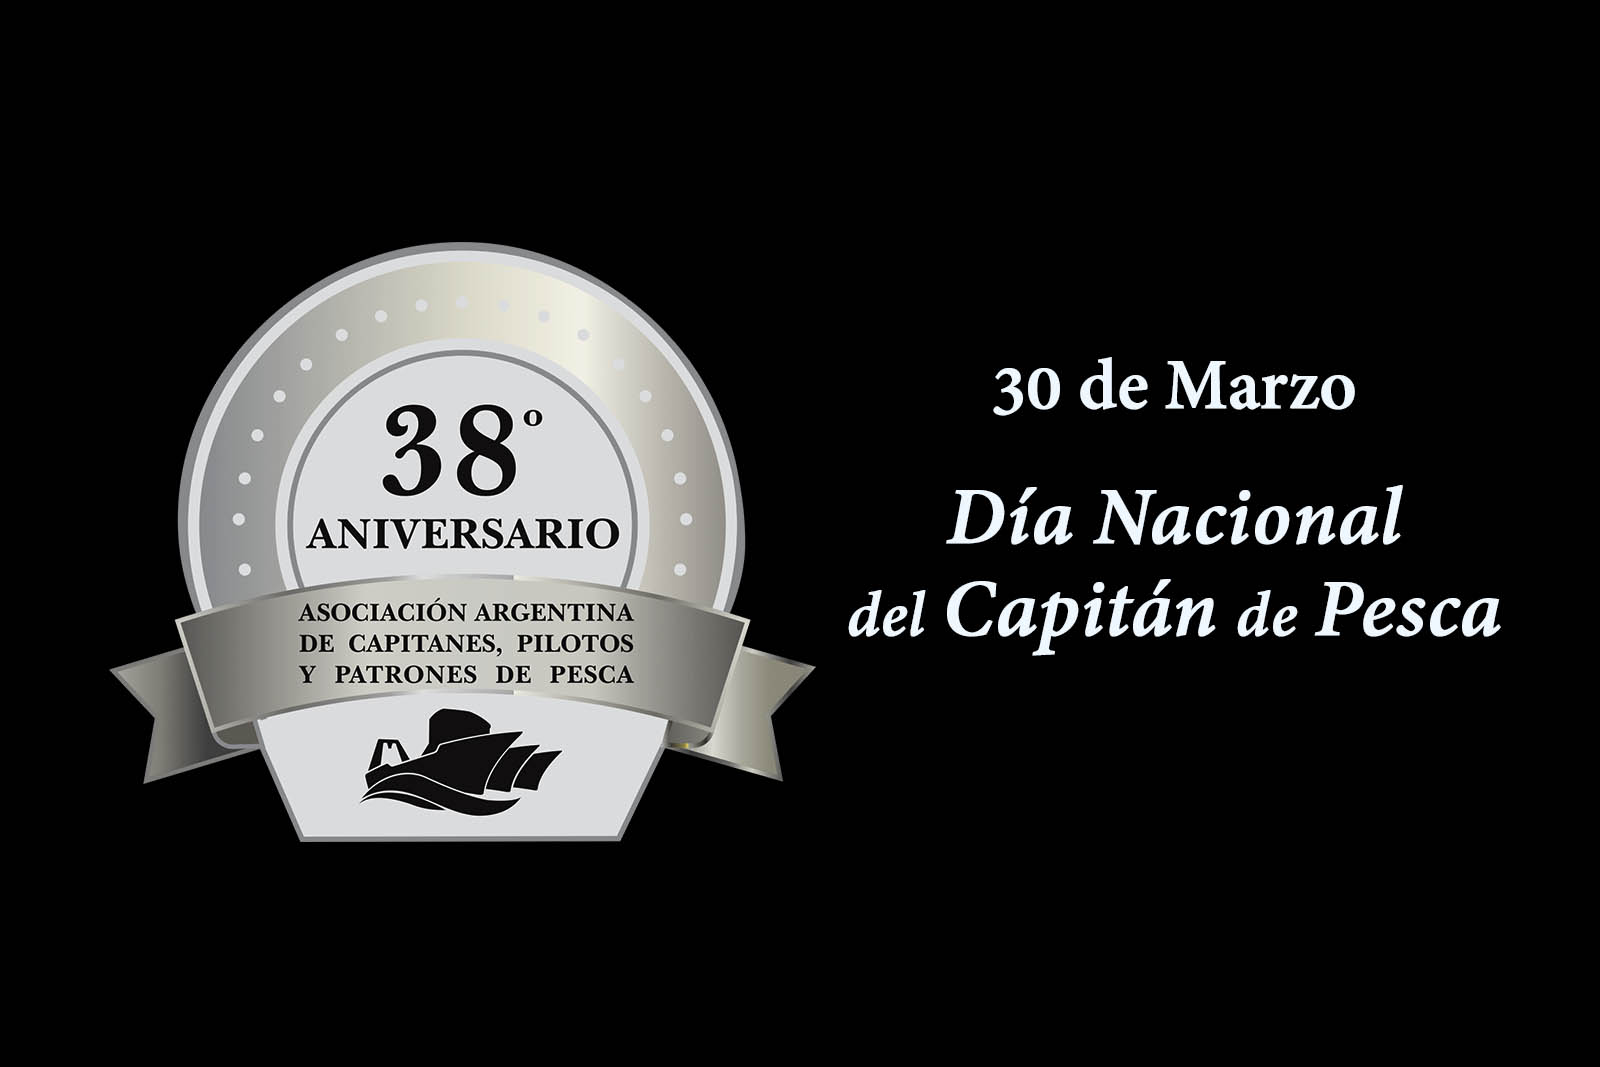 30 de marzo, celebramos el 38 aniversario de la AACPyPP, y día del Capitán de Pesca